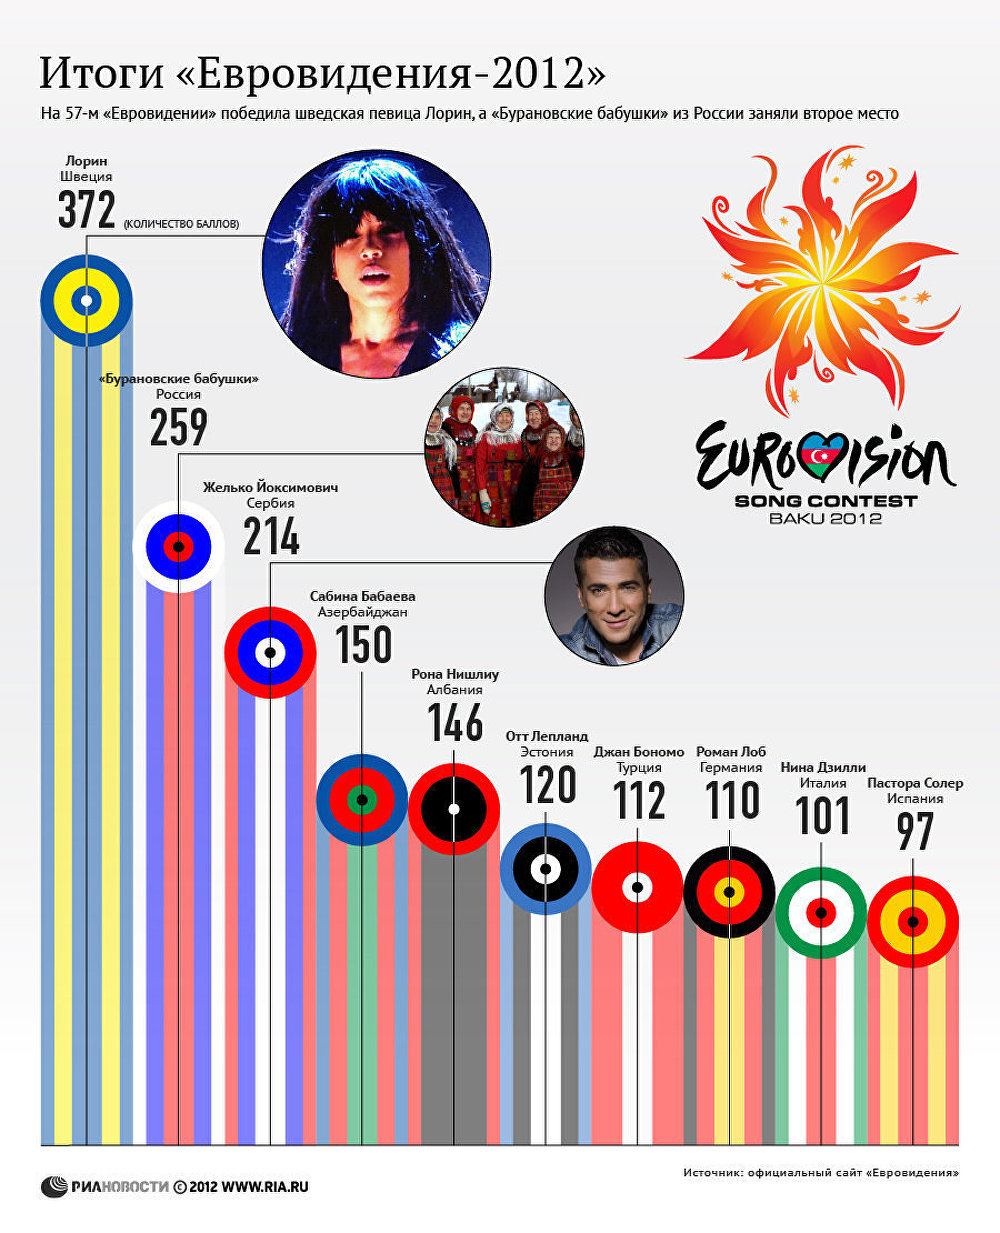 Итоги Евровидения-2012